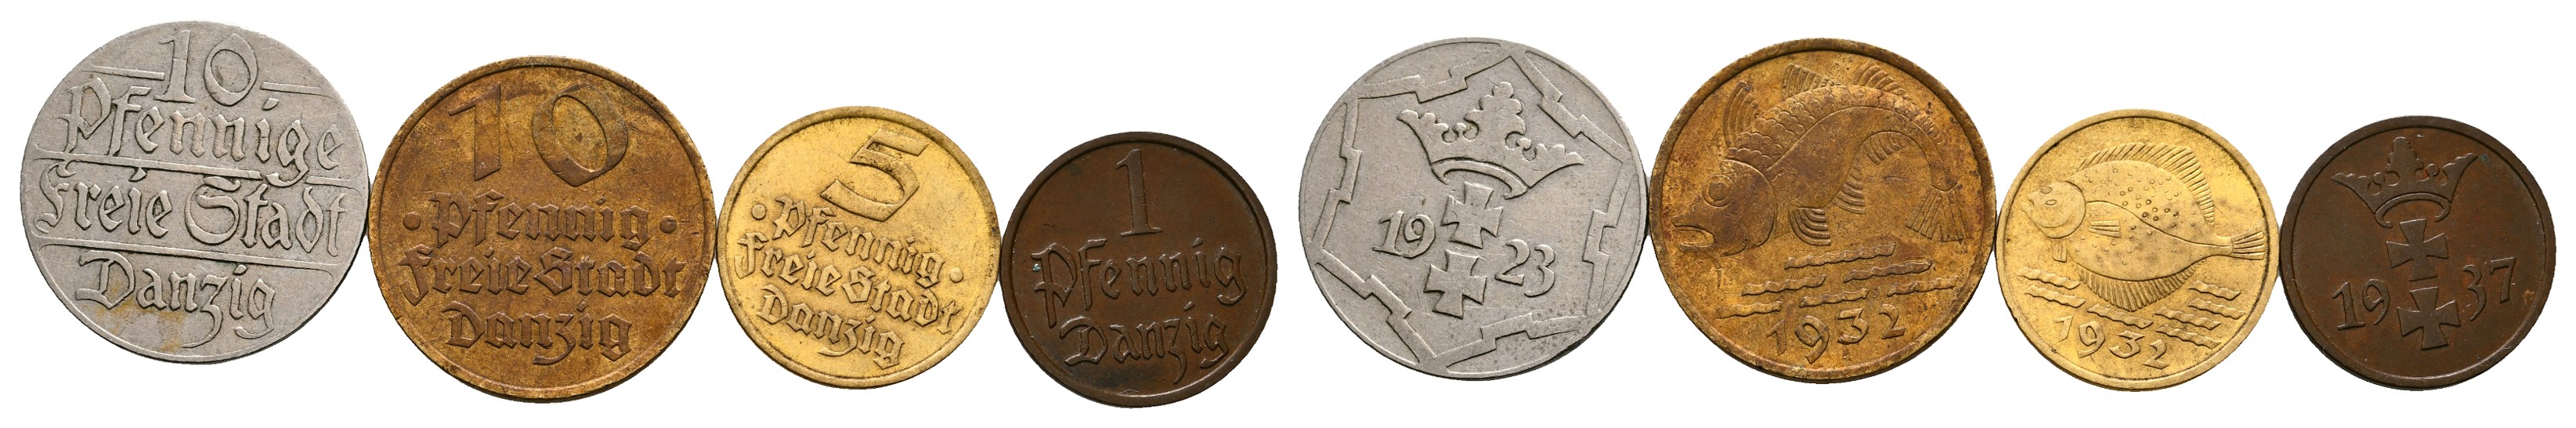  MGS Schweiz 2 Franken 1928 B Feingewicht: 8,35g   